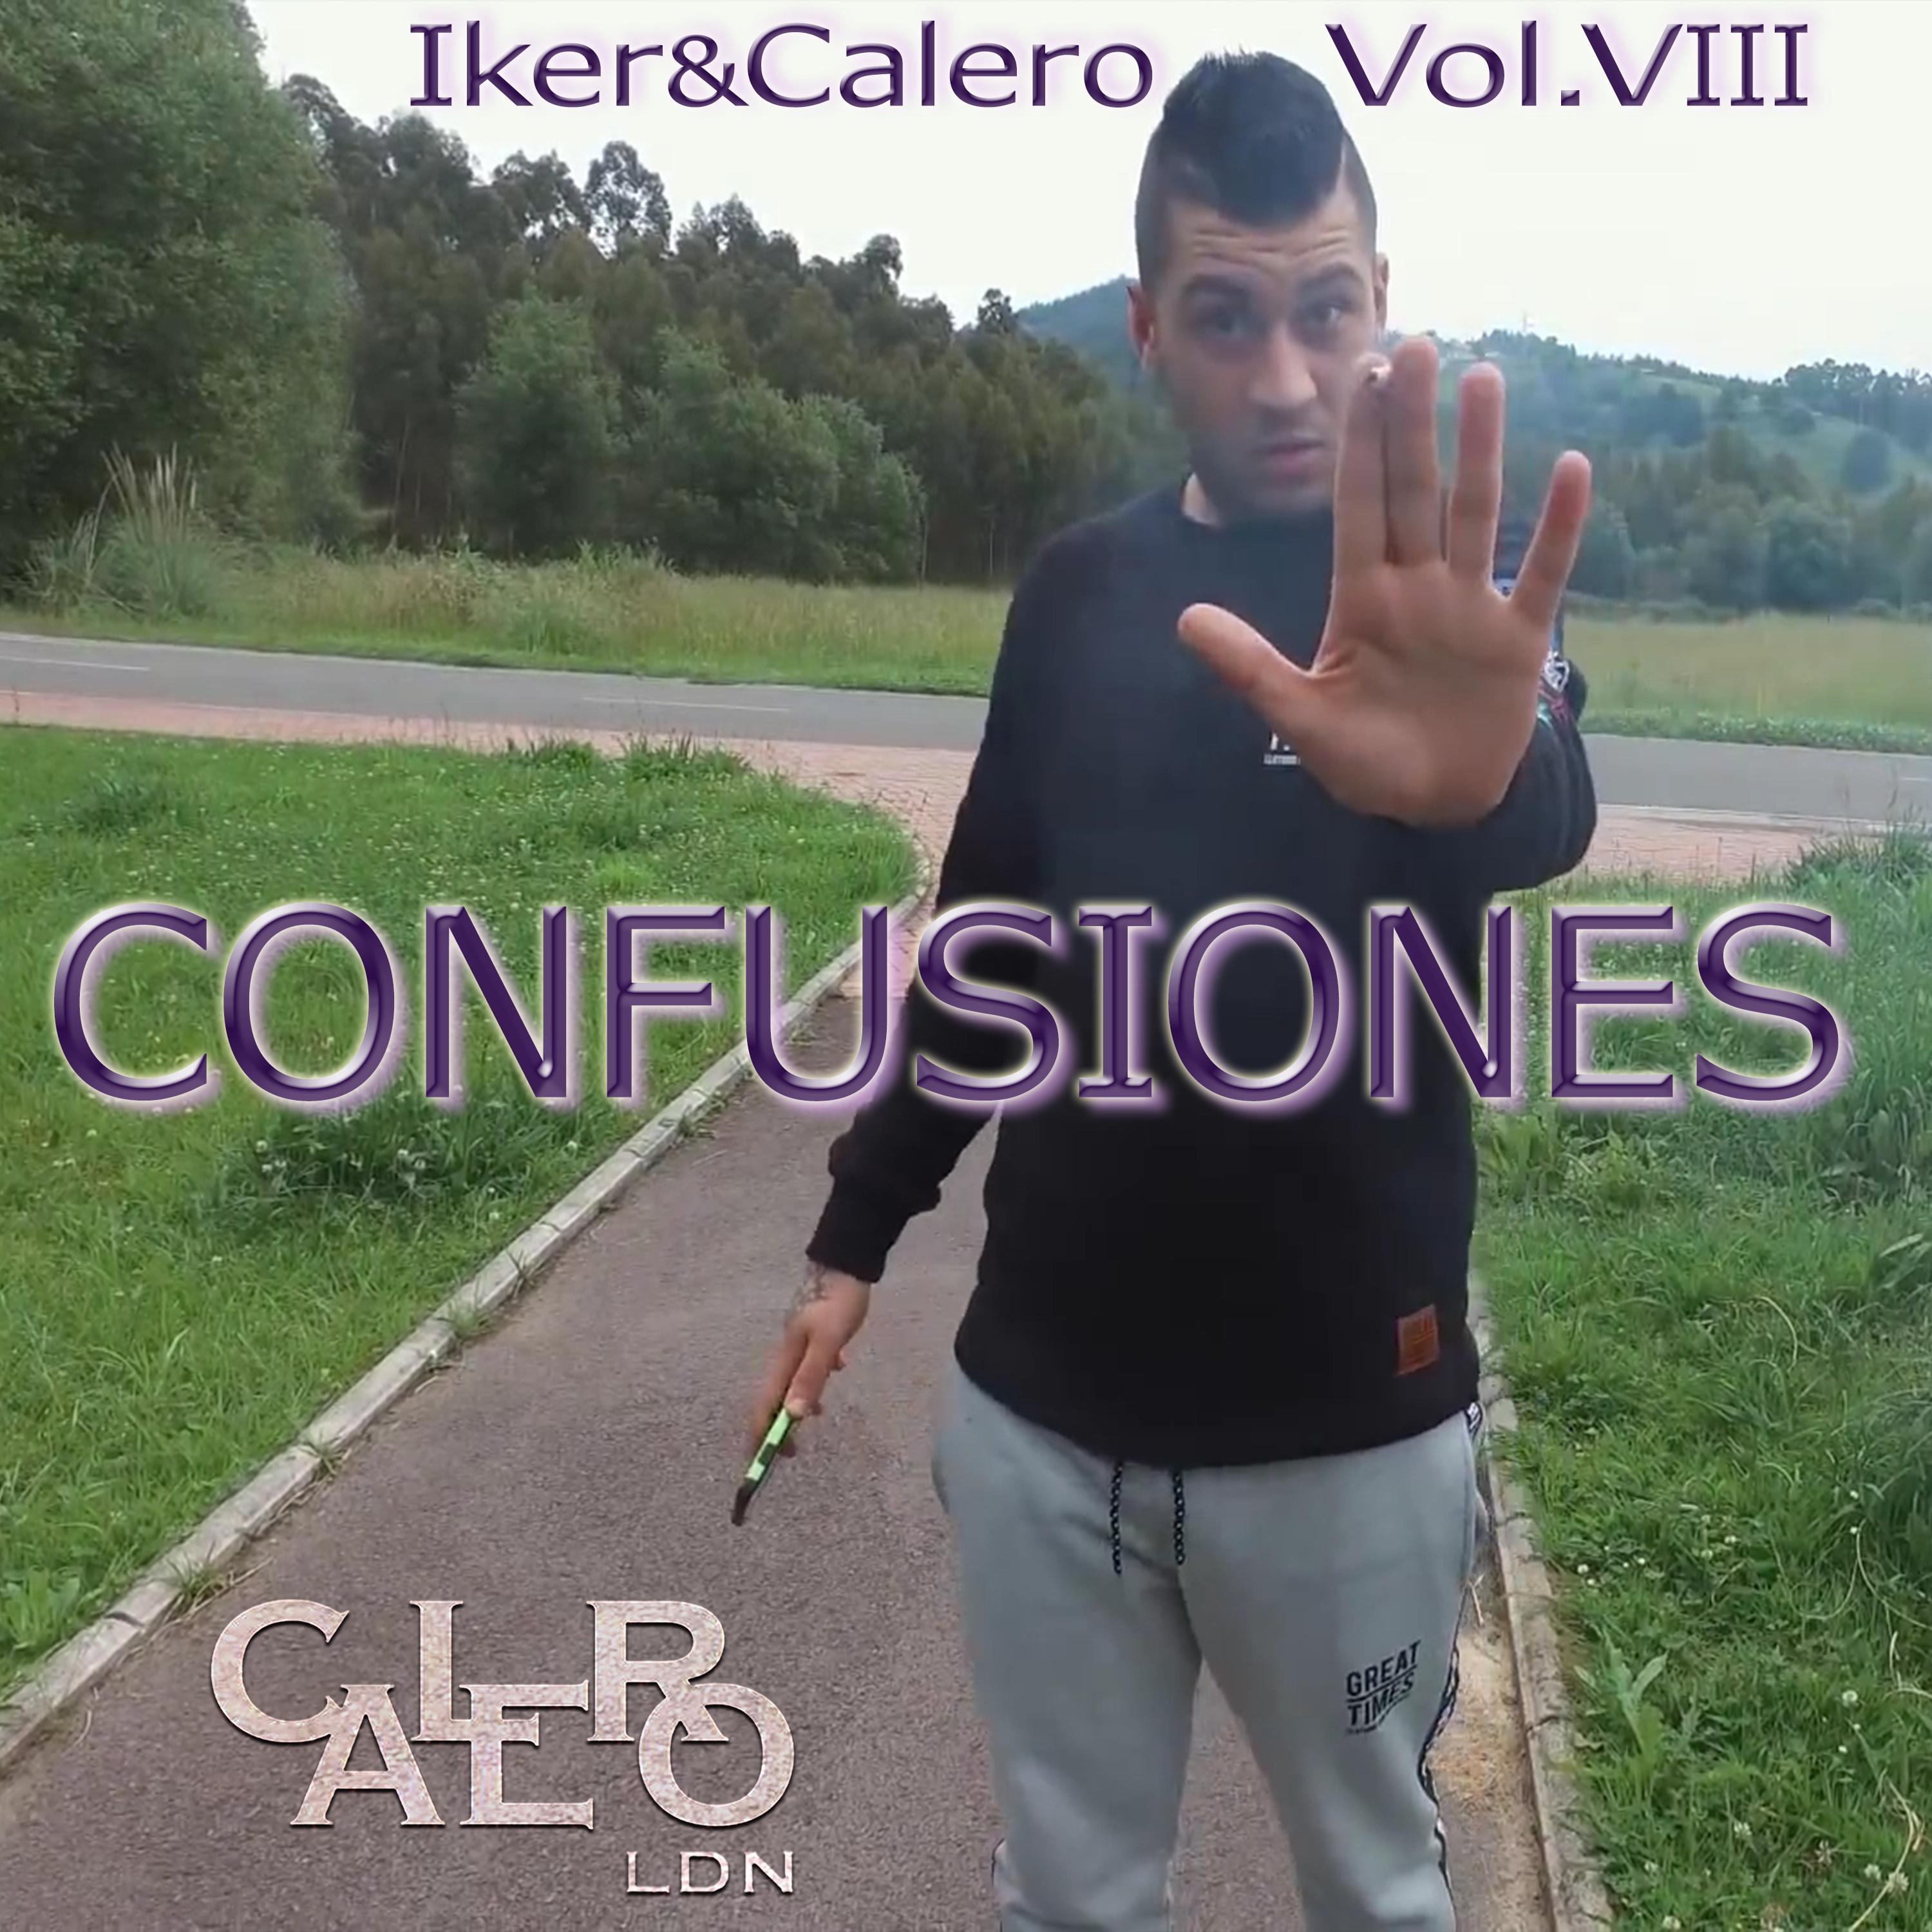 Confusiones (Iker&Calero) (Vol. VIII)